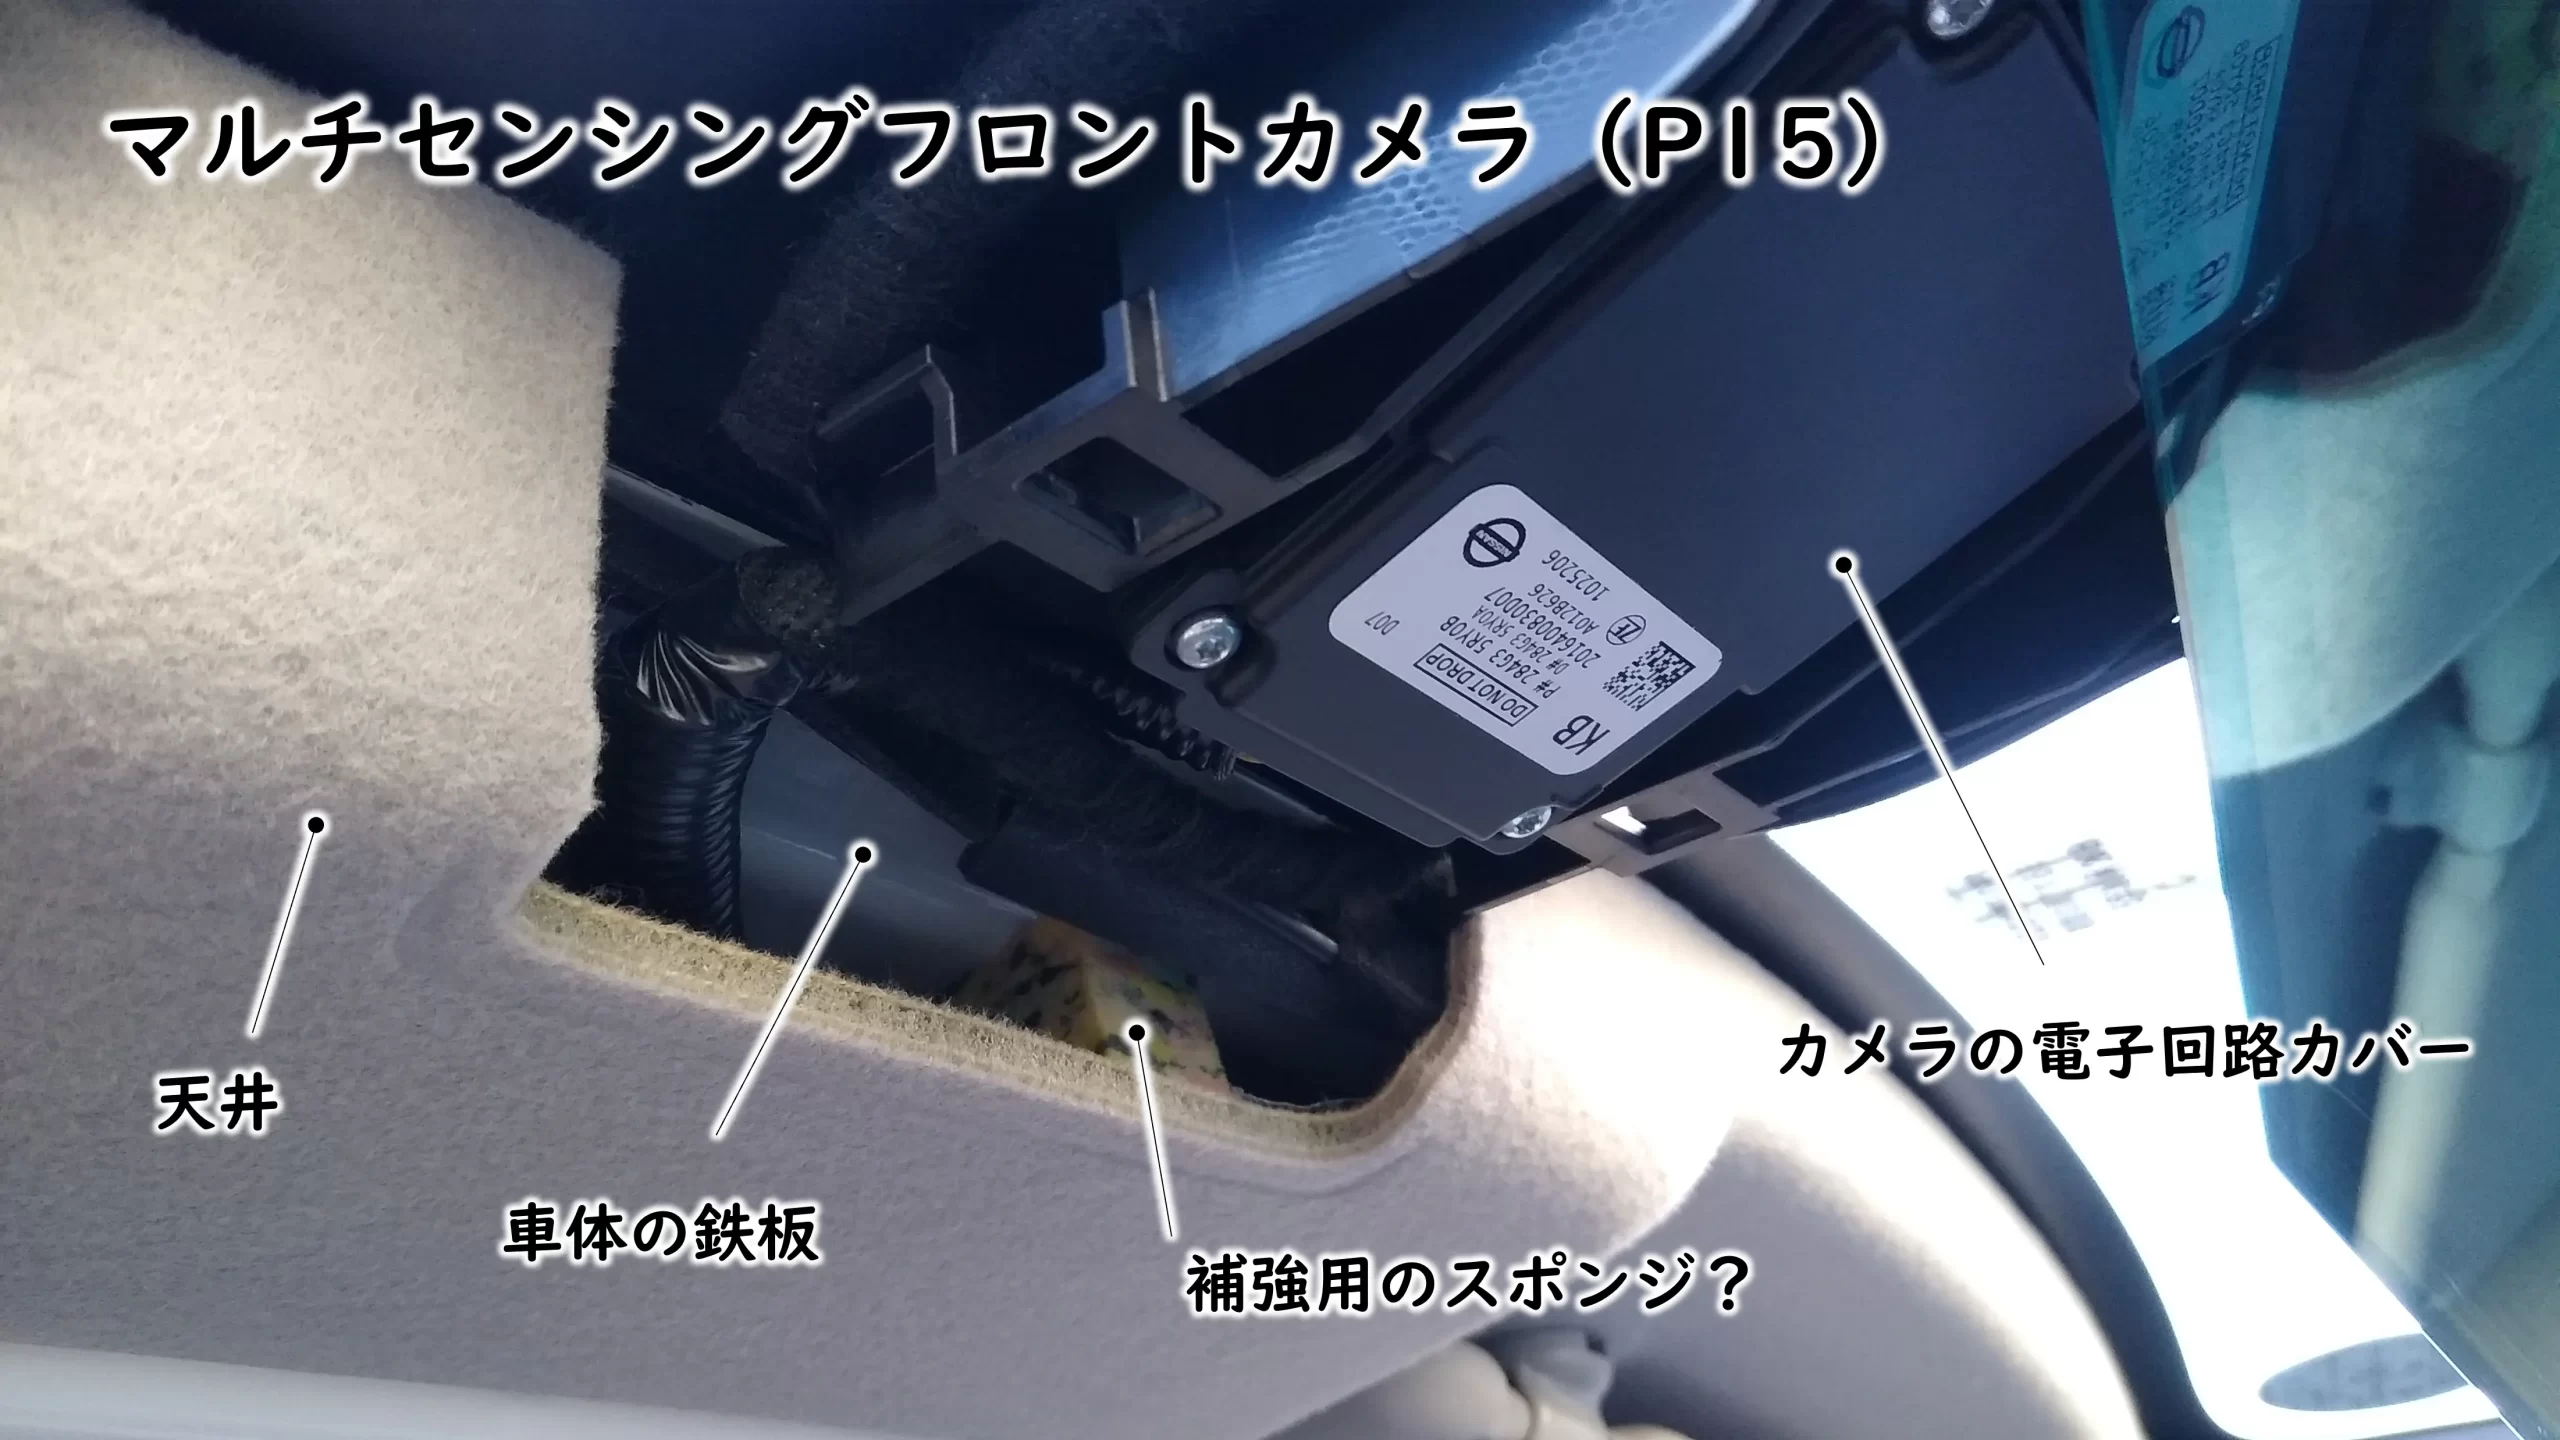 日産キックスe-POWERのマルチセンシングフロントカメラと天井部品